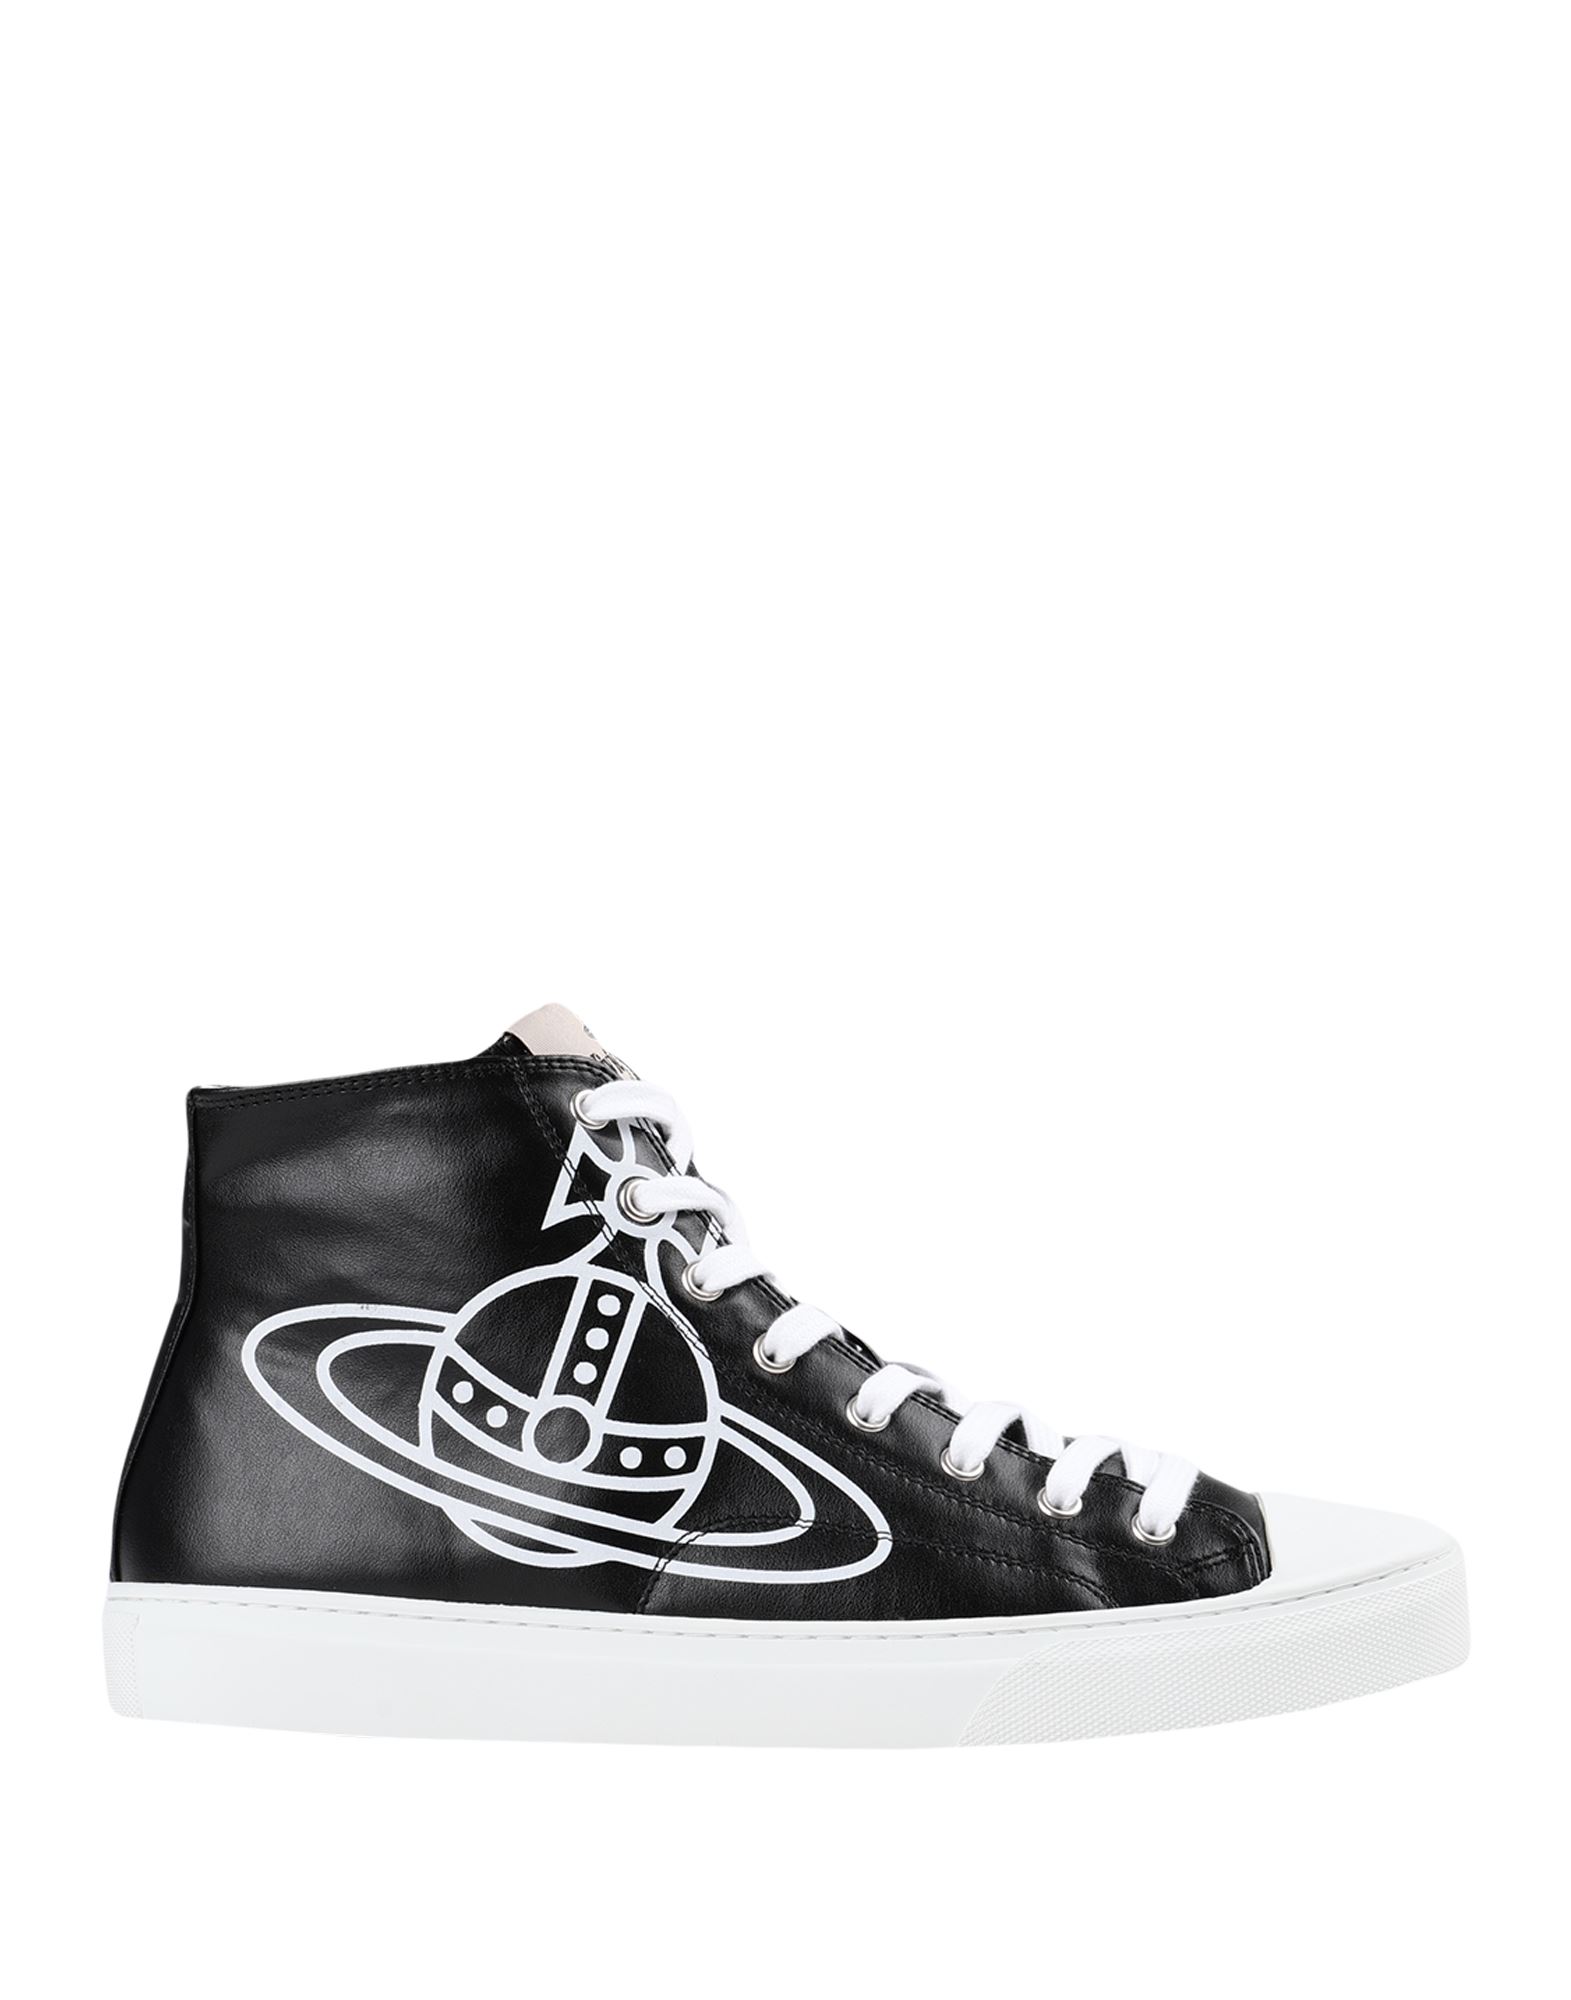 Vivienne Westwood Sneakers In Black